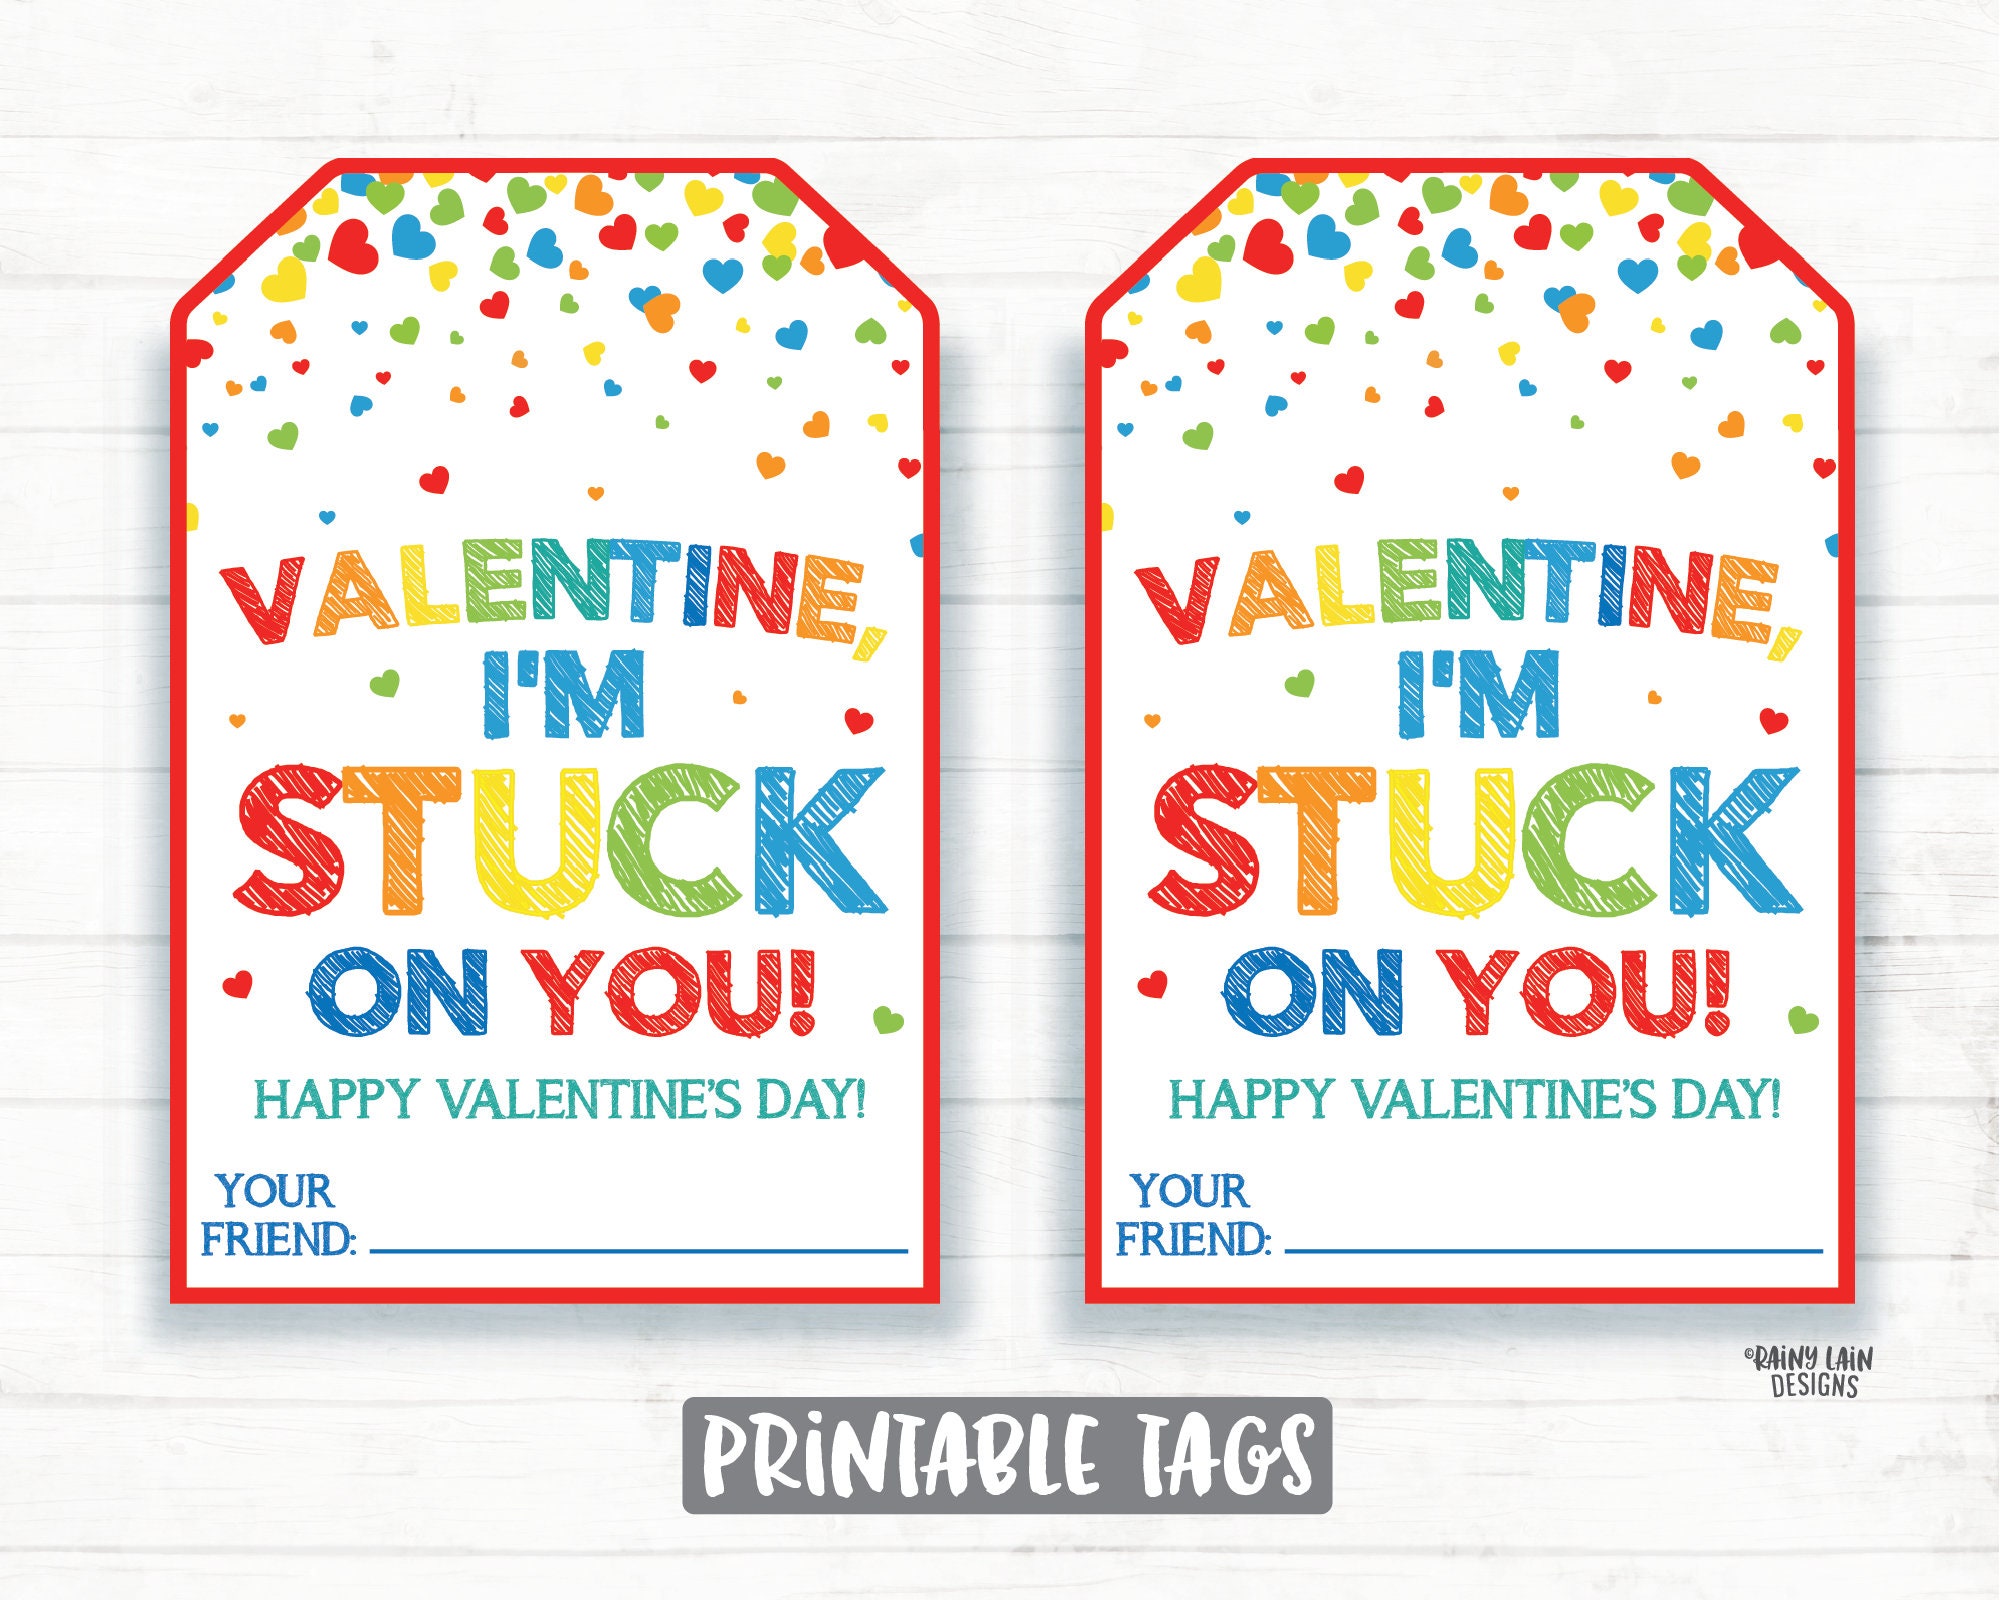 hello emma: stuck on you  Valentine stickers, Valentines